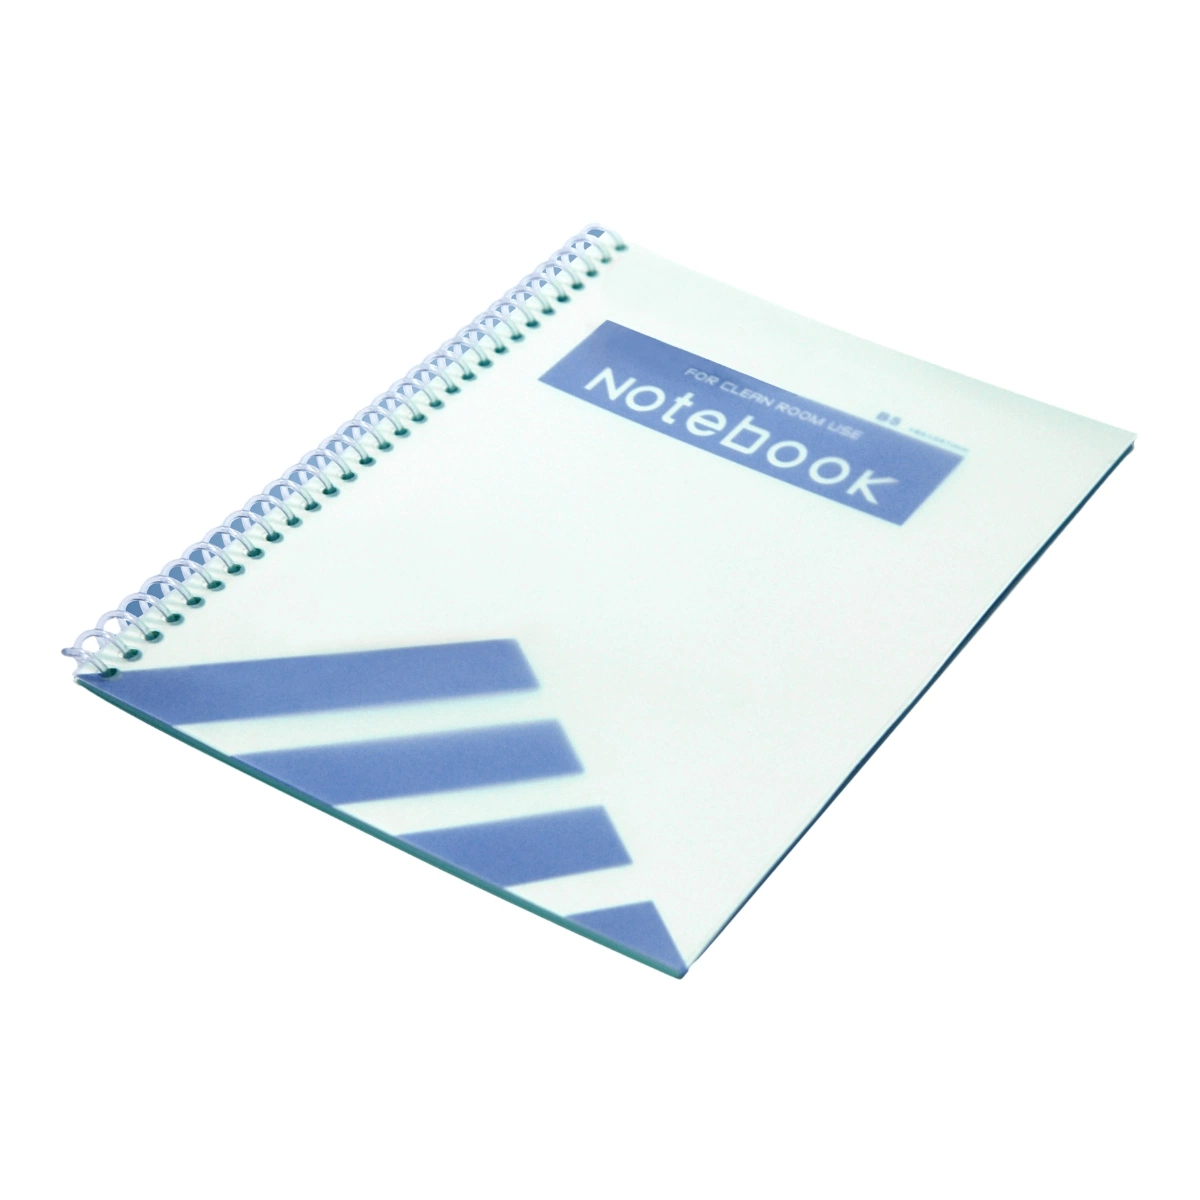 Industrie Reinraum Papier Schrott freies A4 Größe Notebook für Industrie